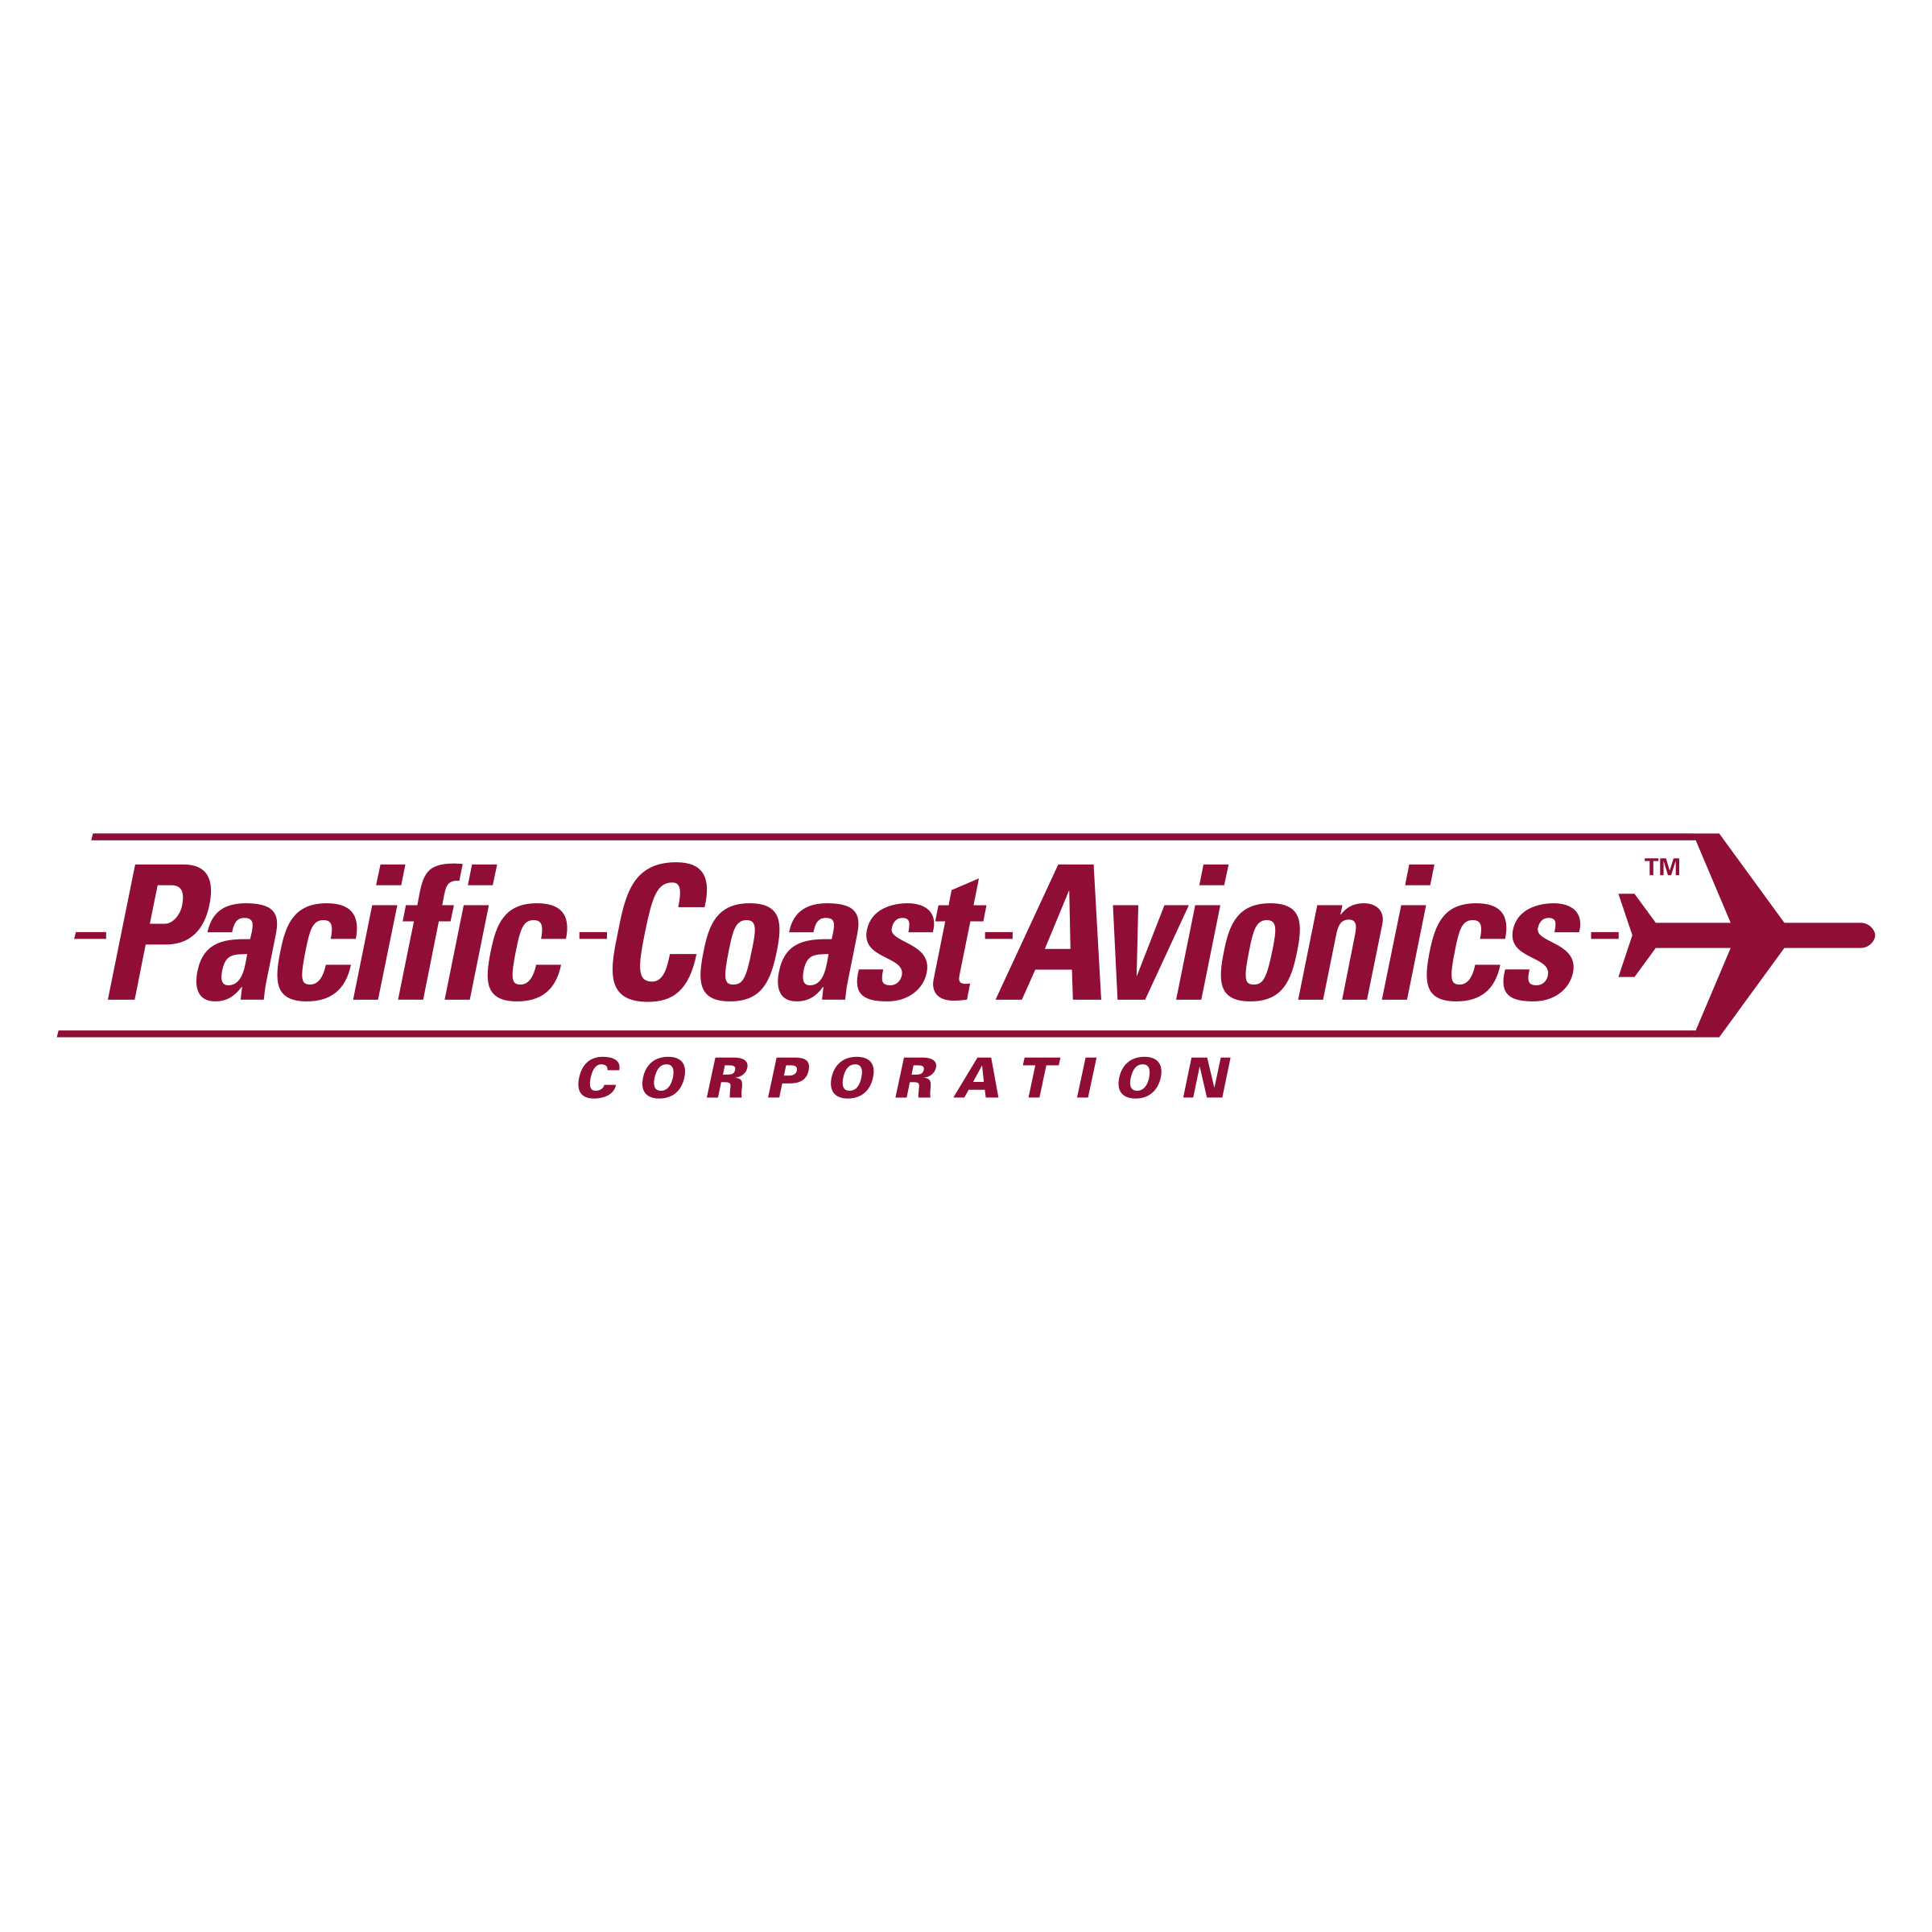 Avionics Logo - Pacific Coast Avionics Logo PNG Transparent & SVG Vector - Freebie ...